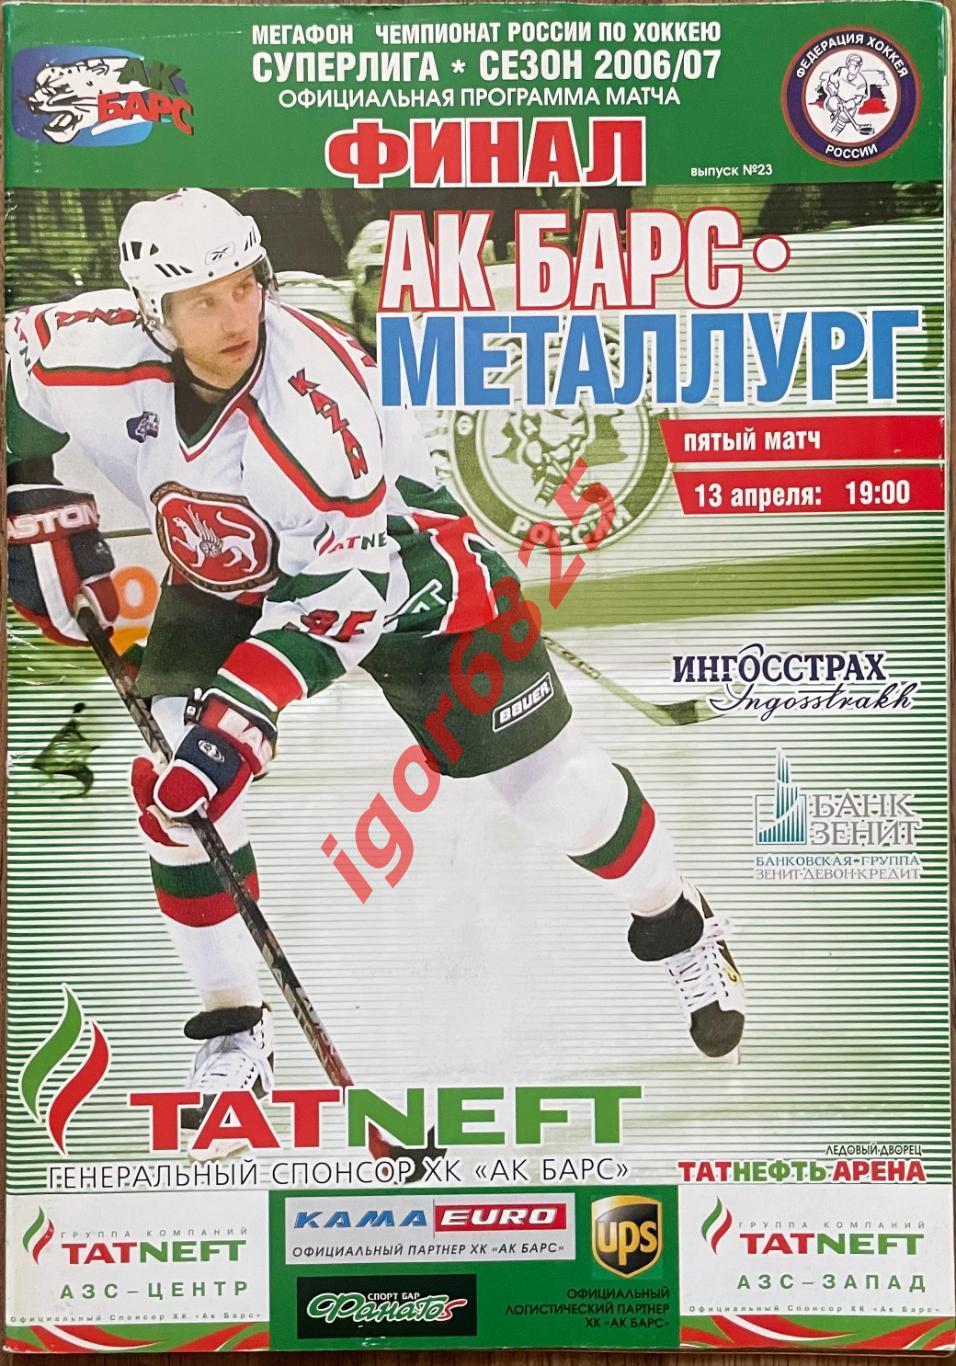 Ак Барс Казань - Металлург Магнитогорск. 13 апреля 2007 года. Суперлига. Финал